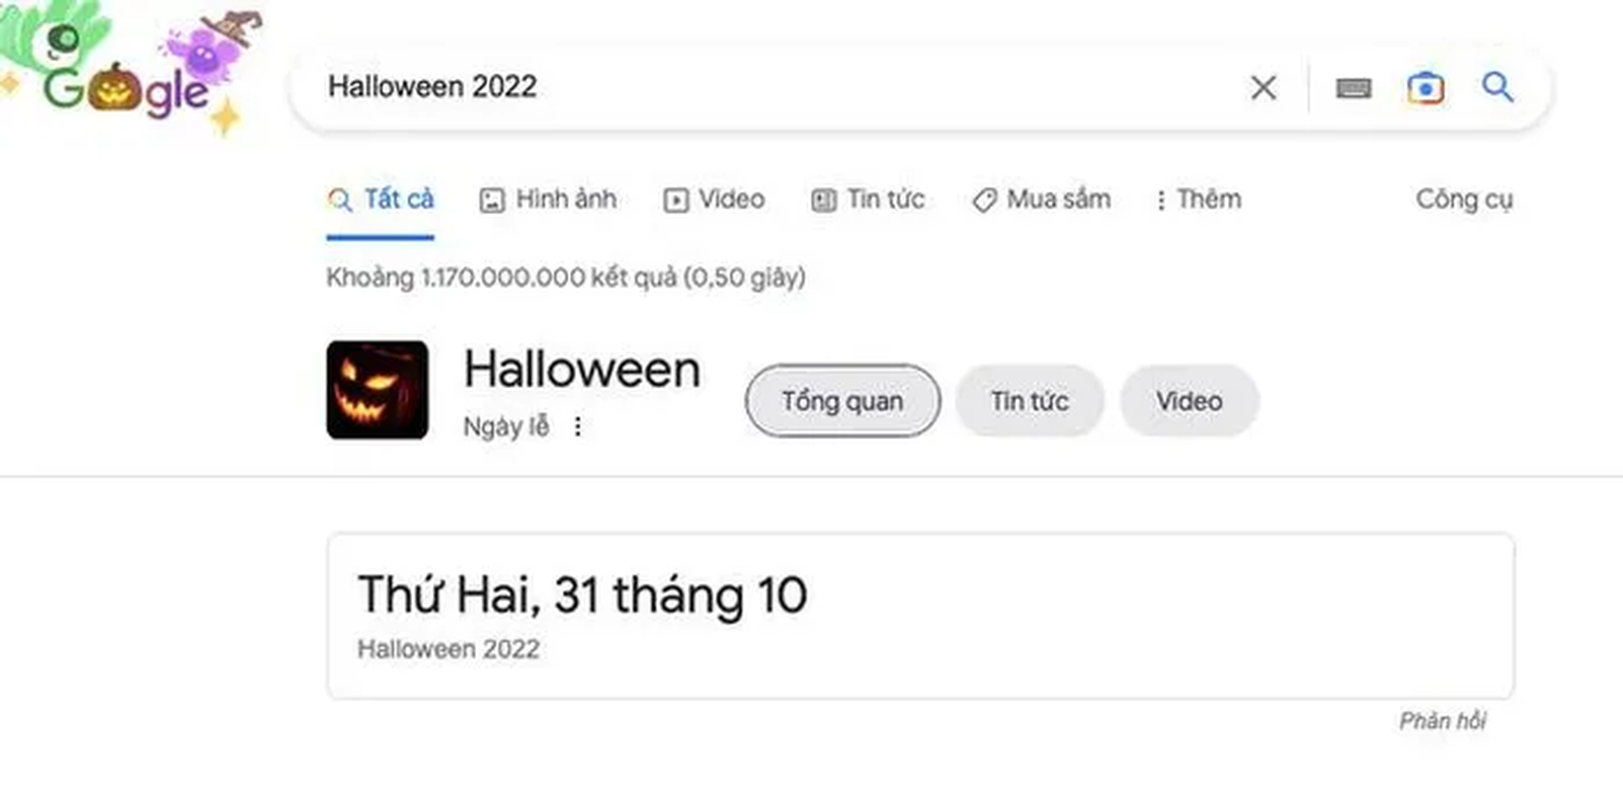 Google mang dien mao moi nhan dip Halloween 2022, co gi dac biet?